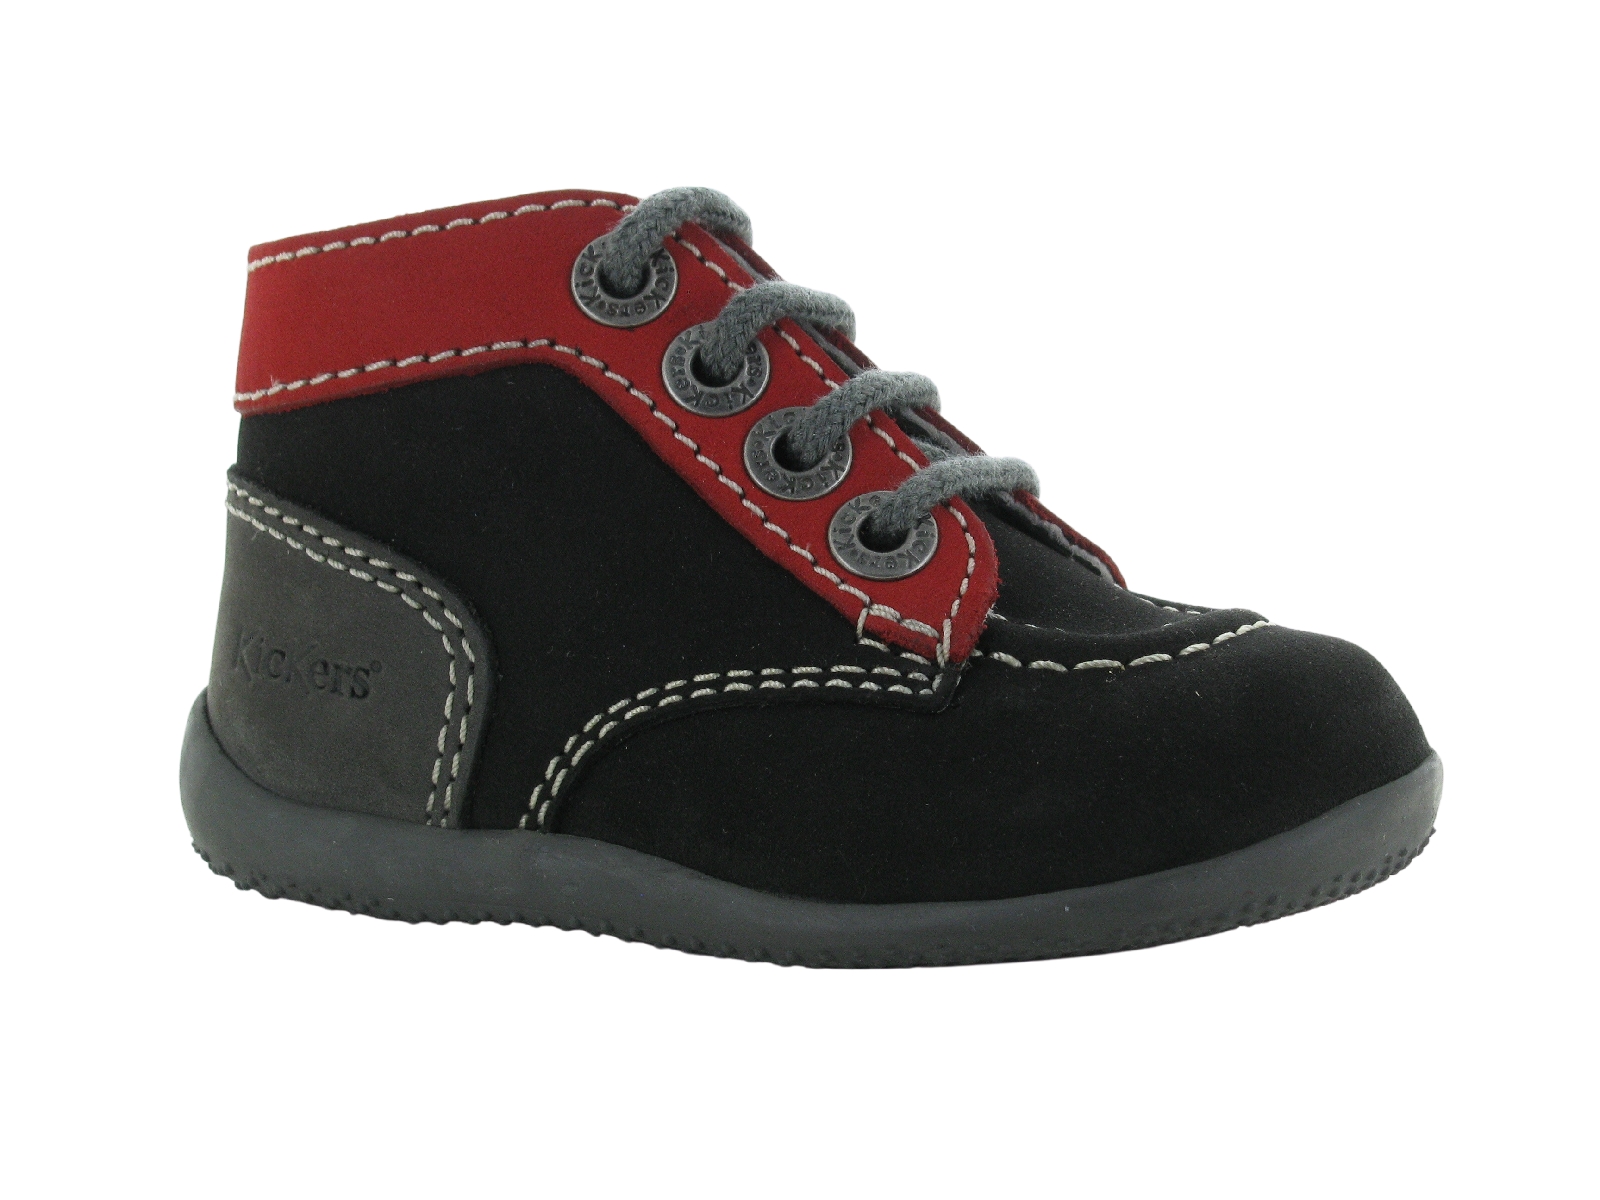 Chaussures du Château  Kickers bottes et bottines bonbon h20 20 23 noir  rouge bebe garcon